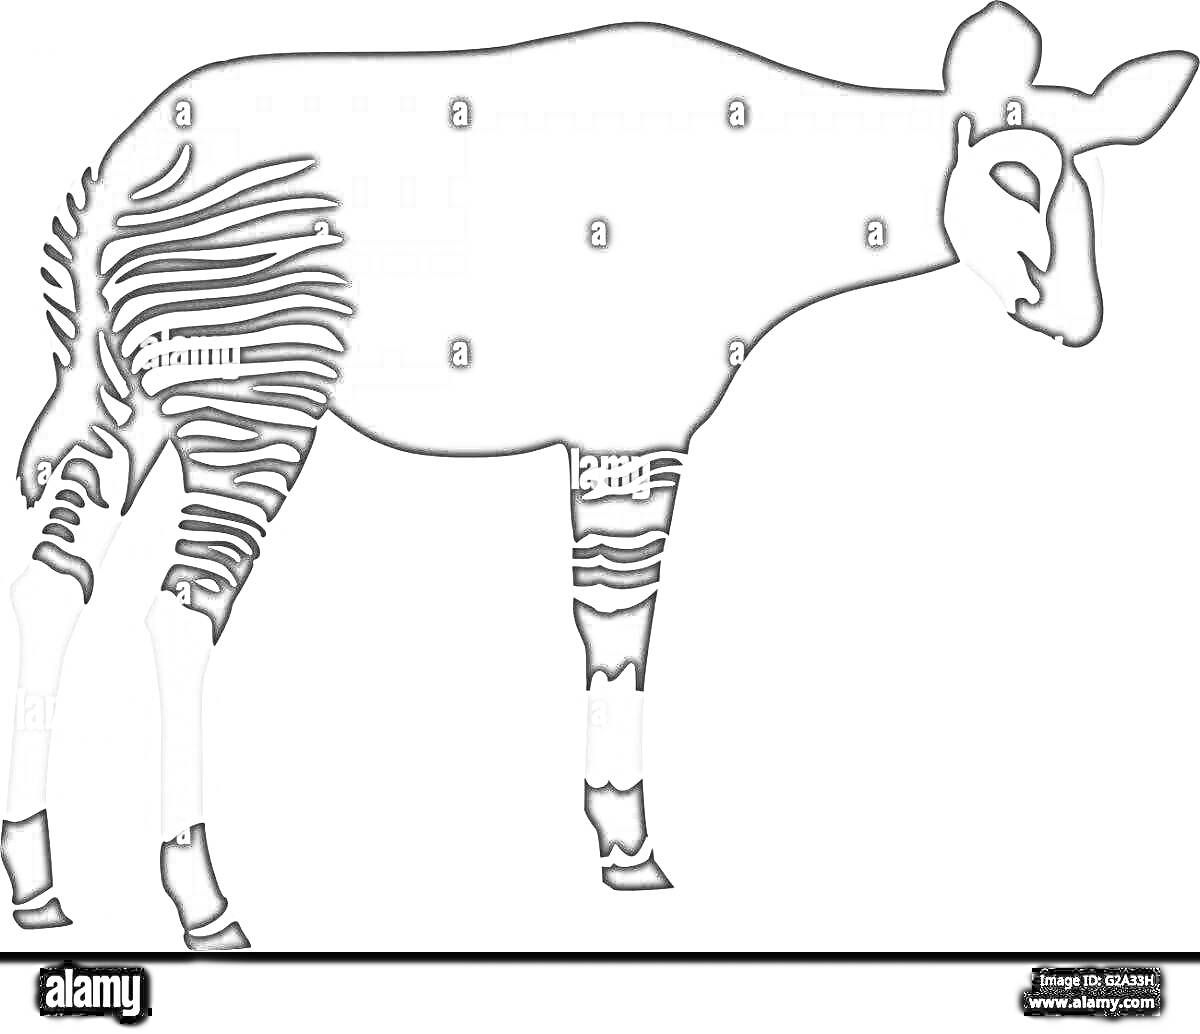 Раскраска Окапи в профиль с полосками на ногах и теле, чёрно-белая раскраска